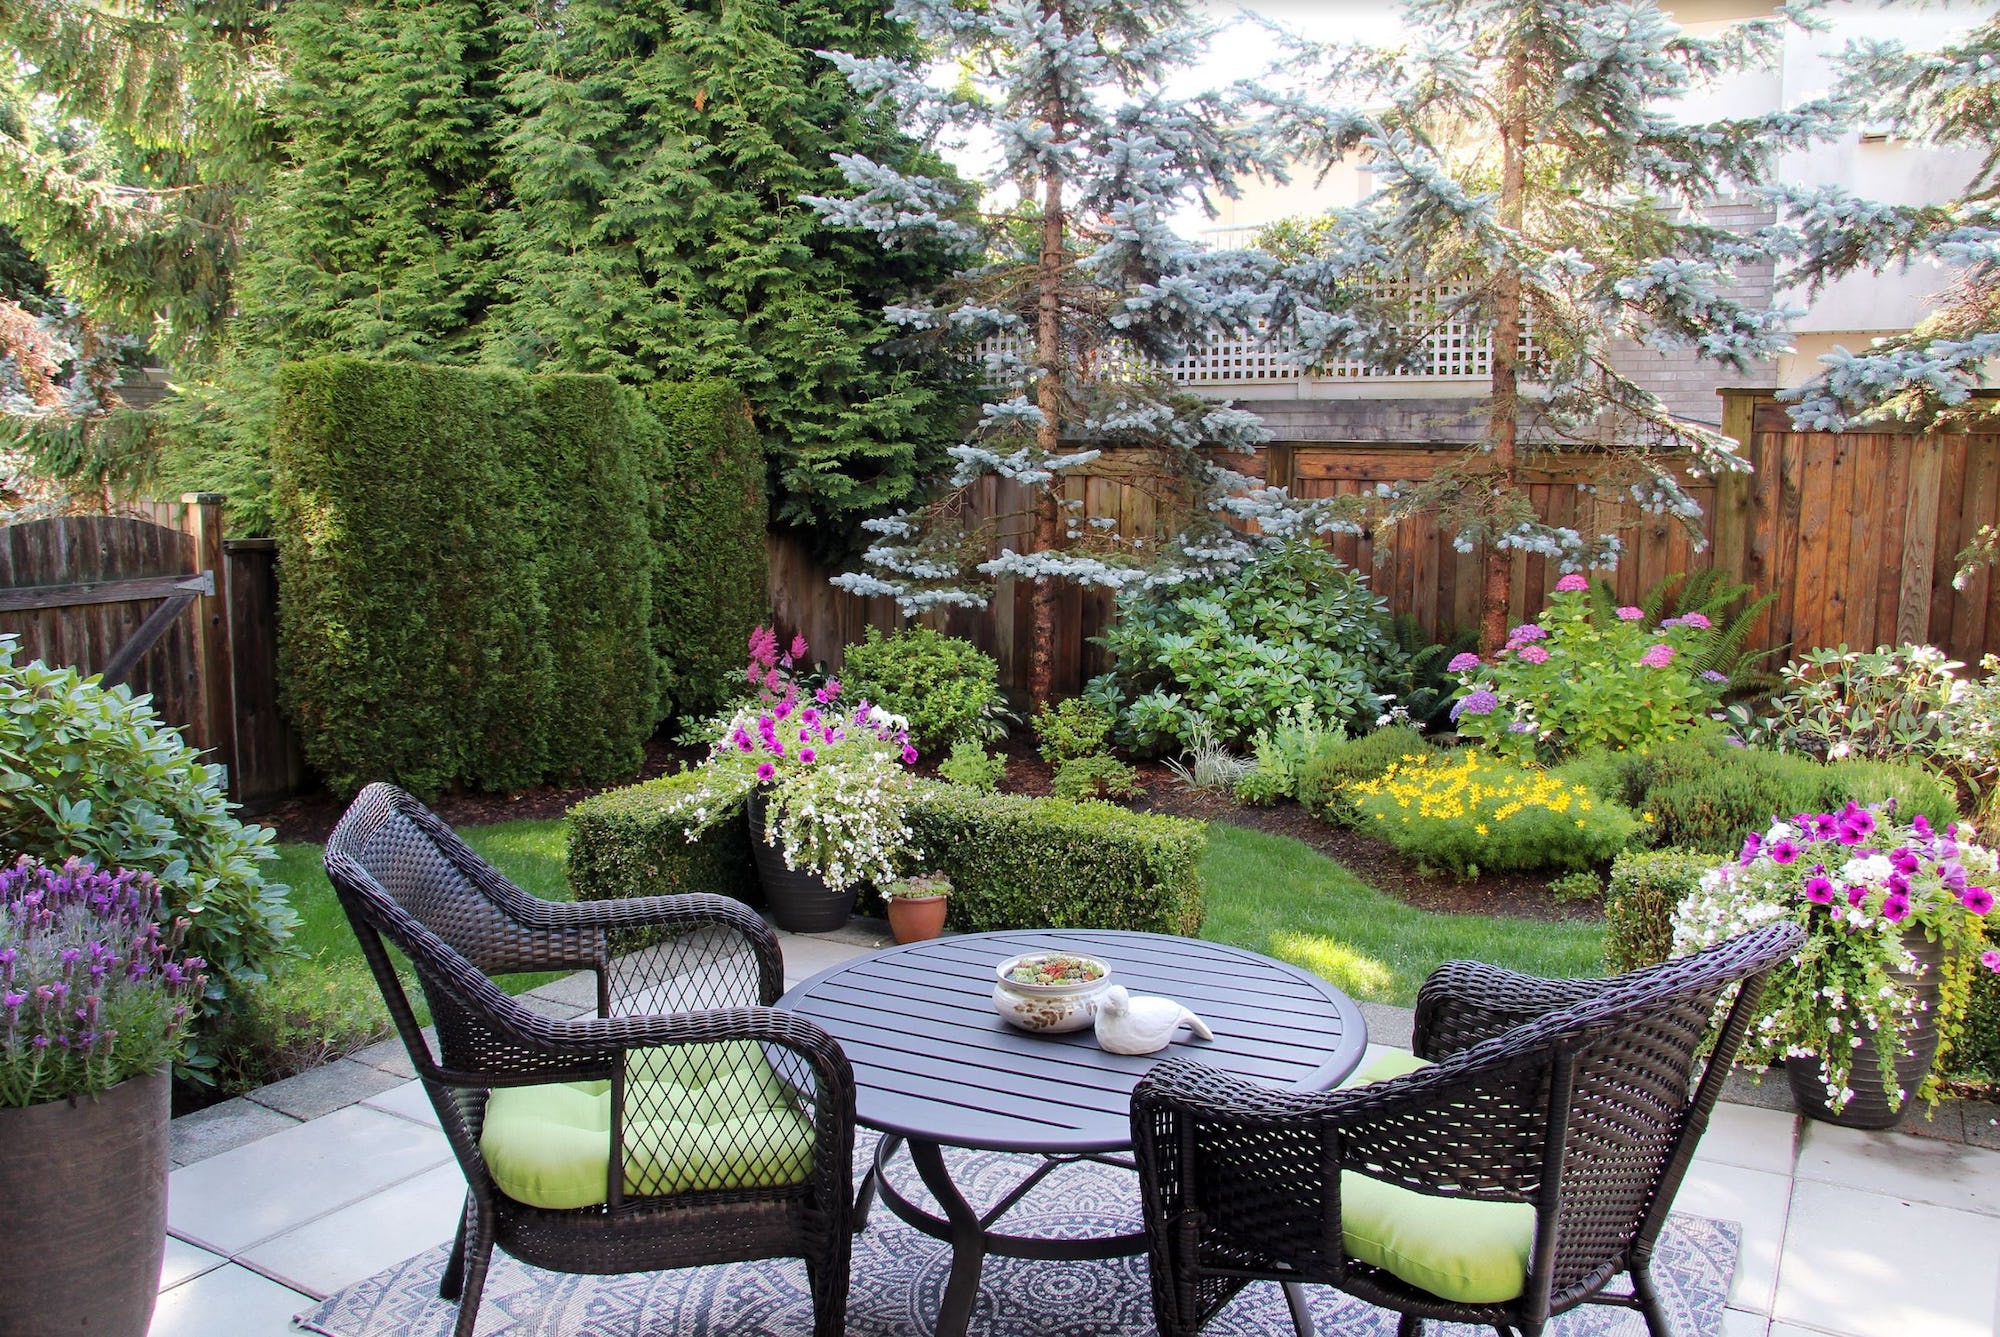 A lush back garden, providing an attractive backyard for a rental home